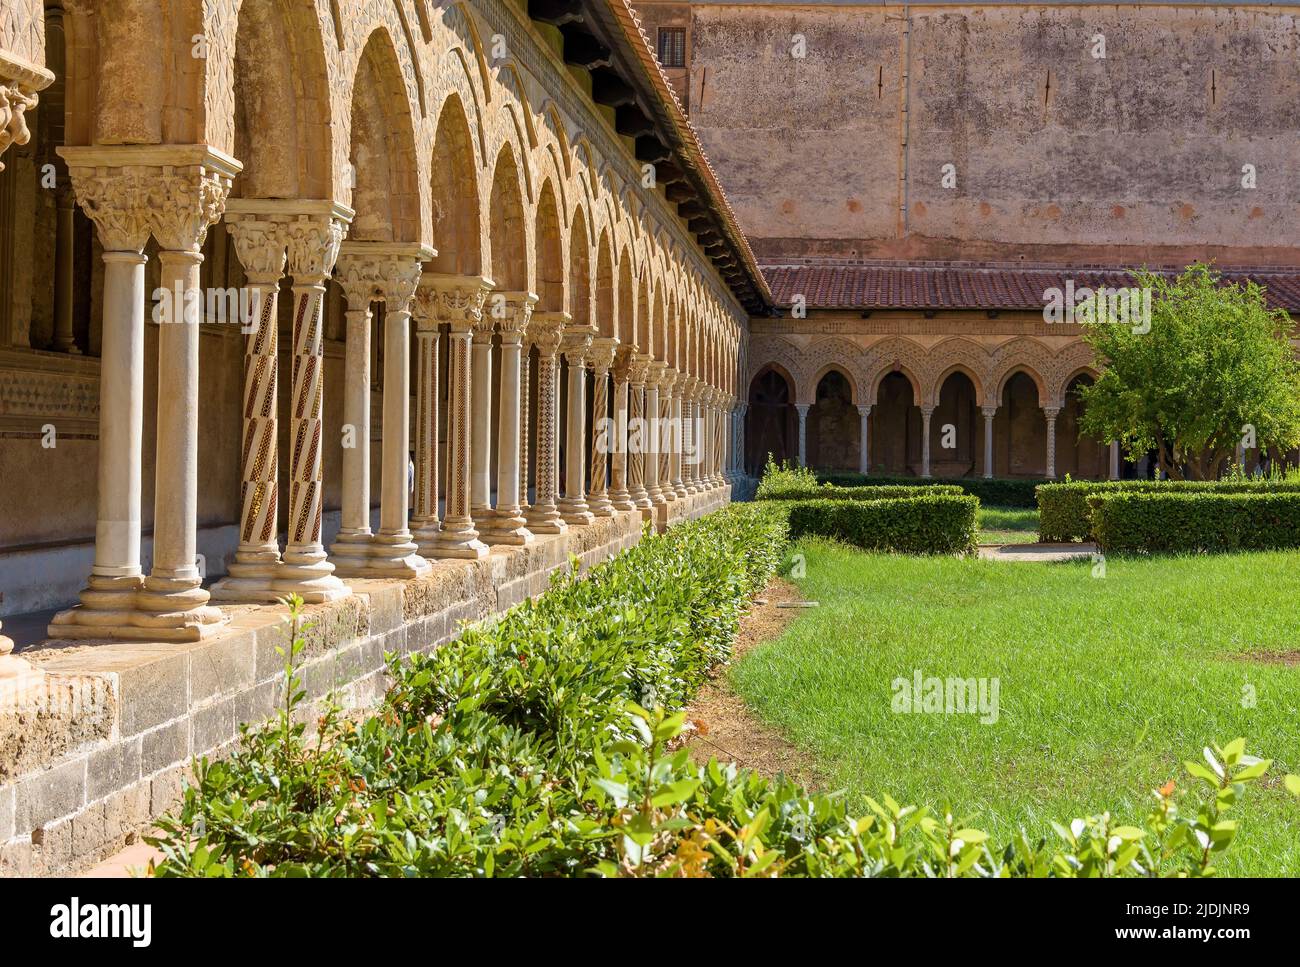 Columnas decoradas en el claustro de la Abadía de Monreale, Palermo, Italia Foto de stock